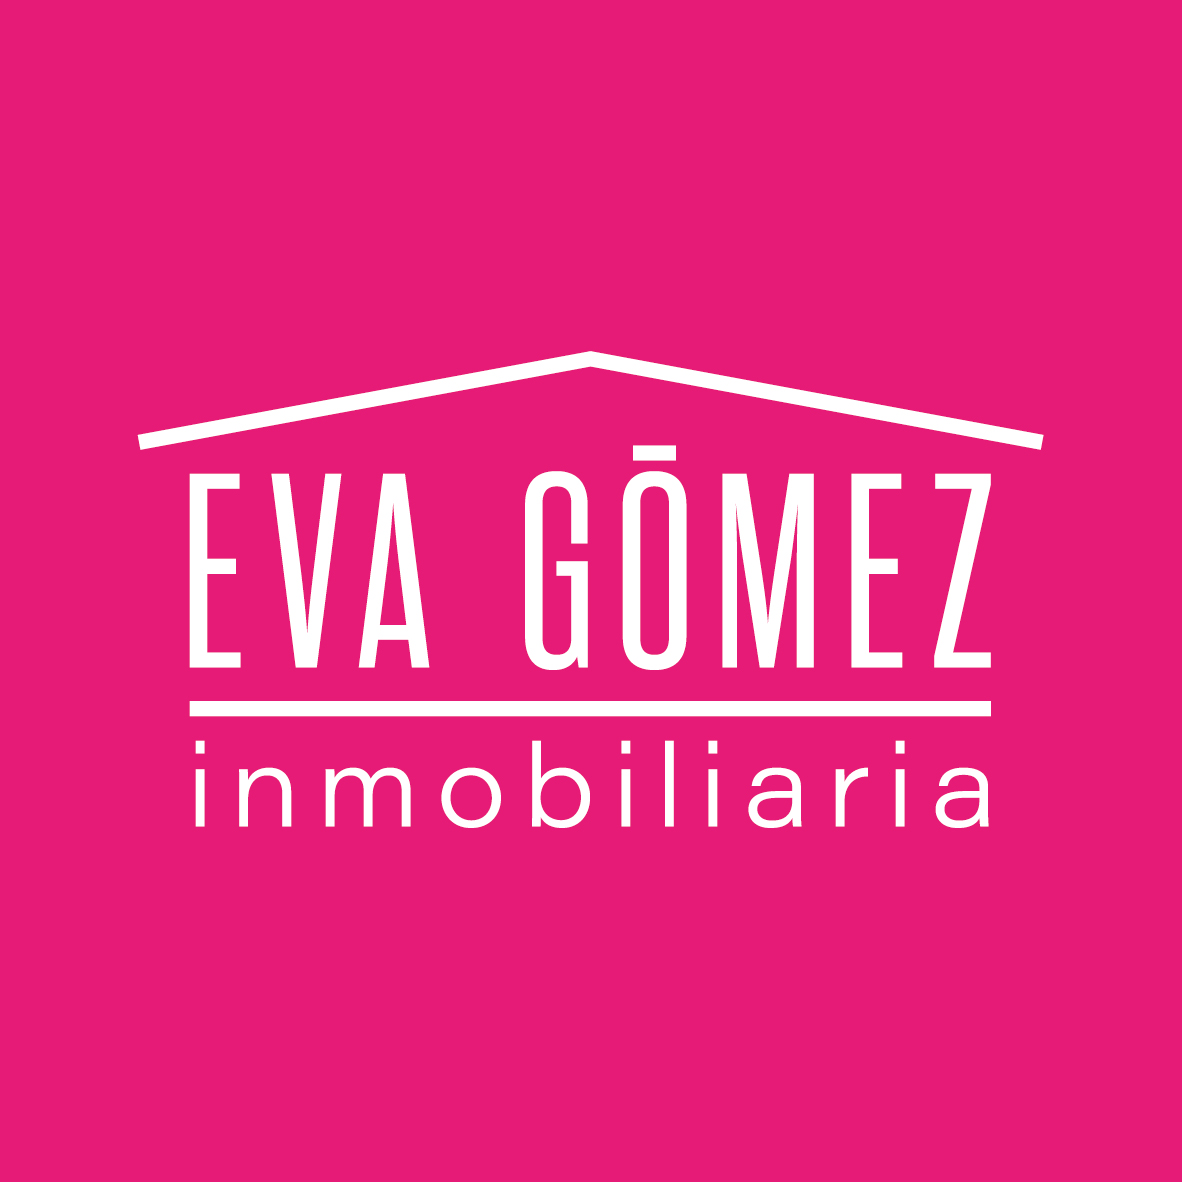 EVA MARIA GOMEZ MAQUIEIRA